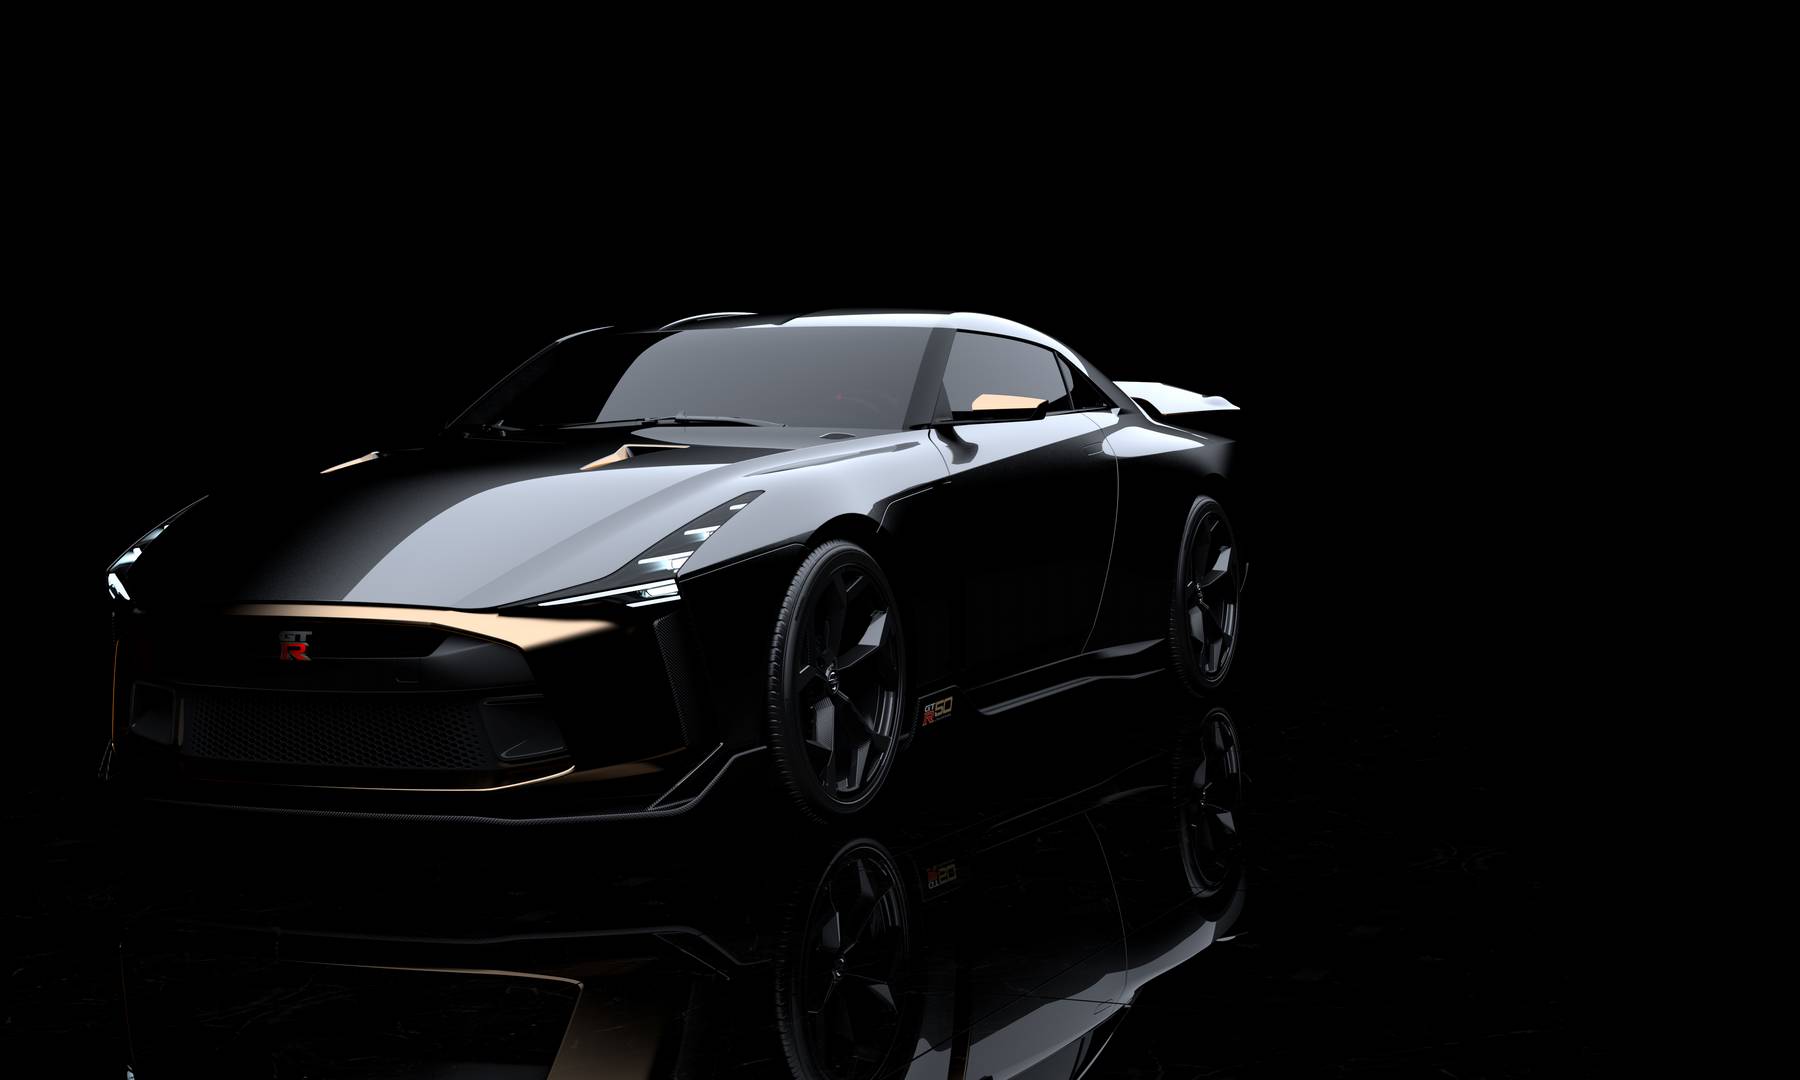 Итальянская дизайнерская и инжиниринговая компания Italdesign недавно анонсировала уникальный Nissan GT-R, чтобы отметить свой 50-летний юбилей, который, как оказалось, совпадает с юбилеем Nissan GT-R!